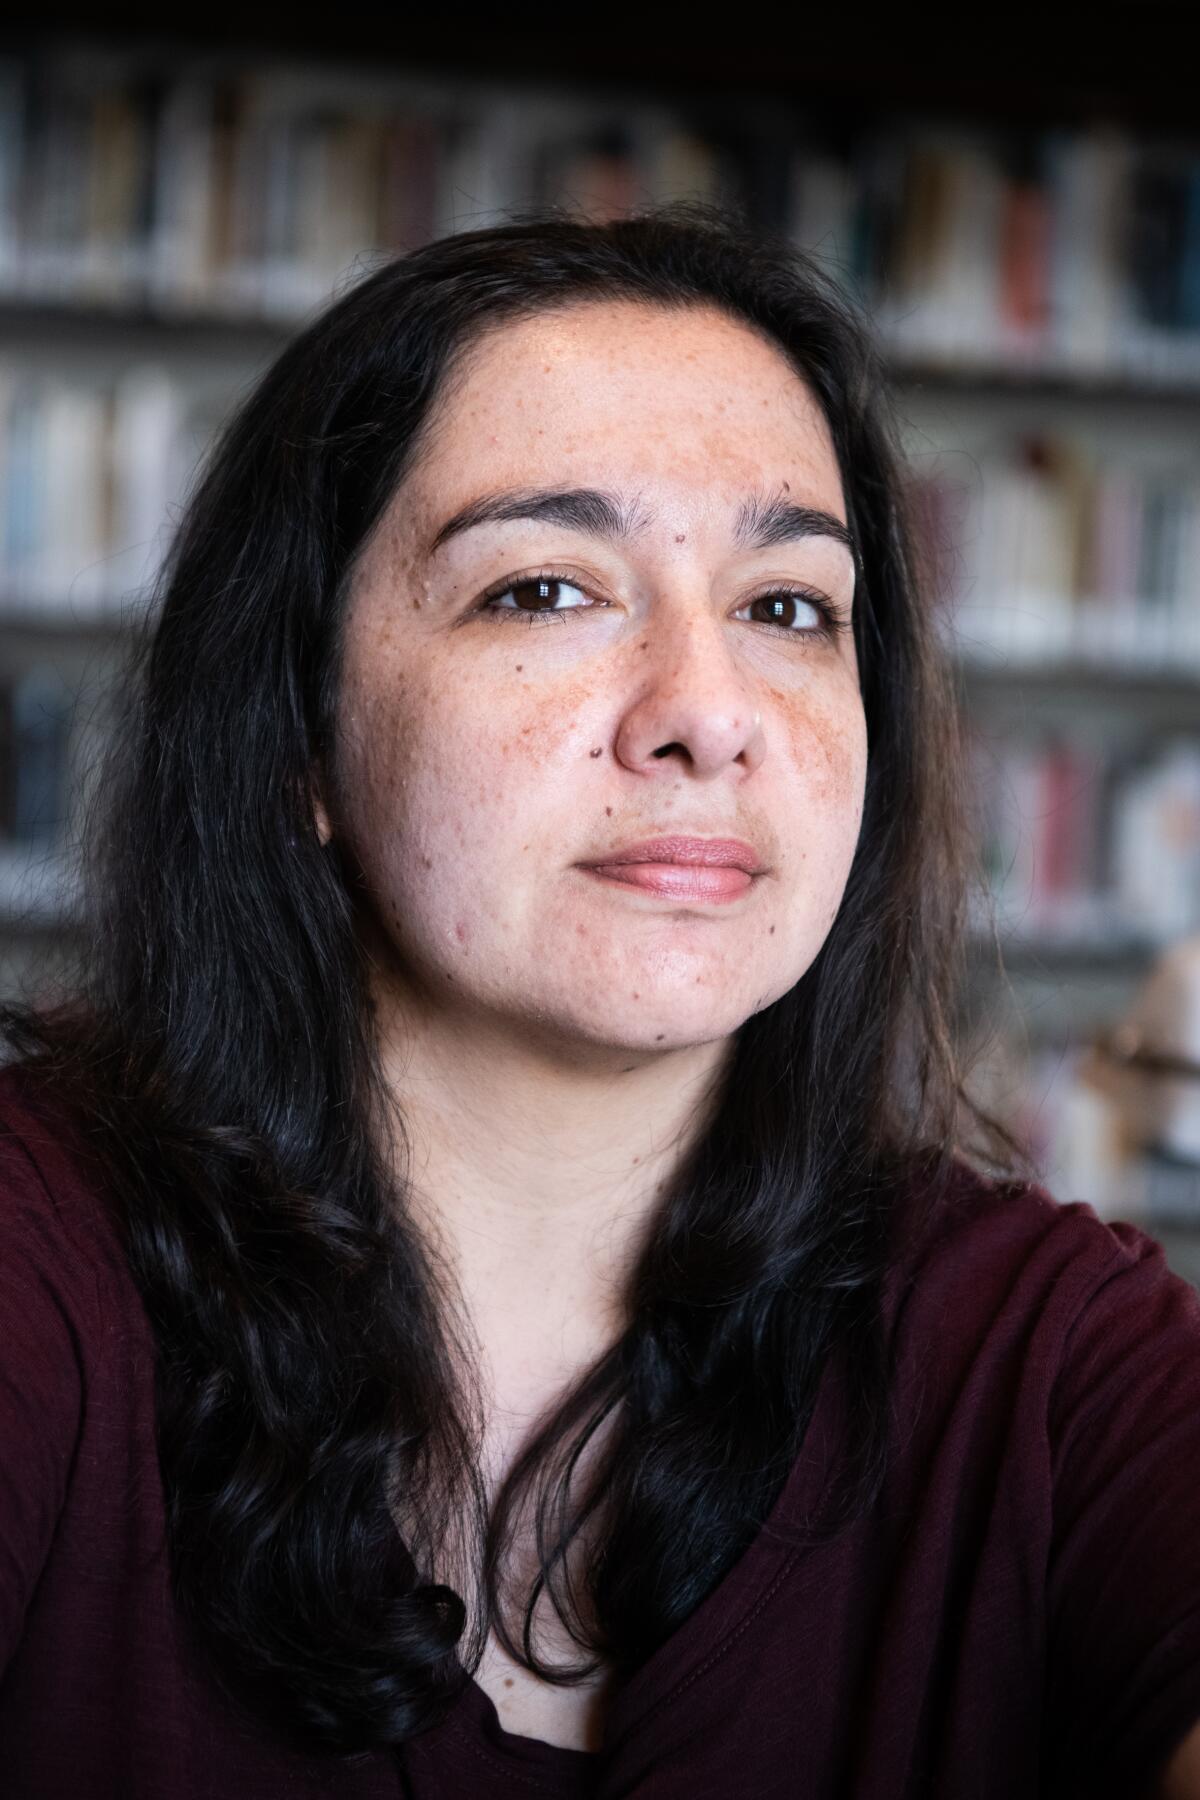 Mexican novelist Fernanda Melchor, seated in burgundy shirt in front of bookshelves.